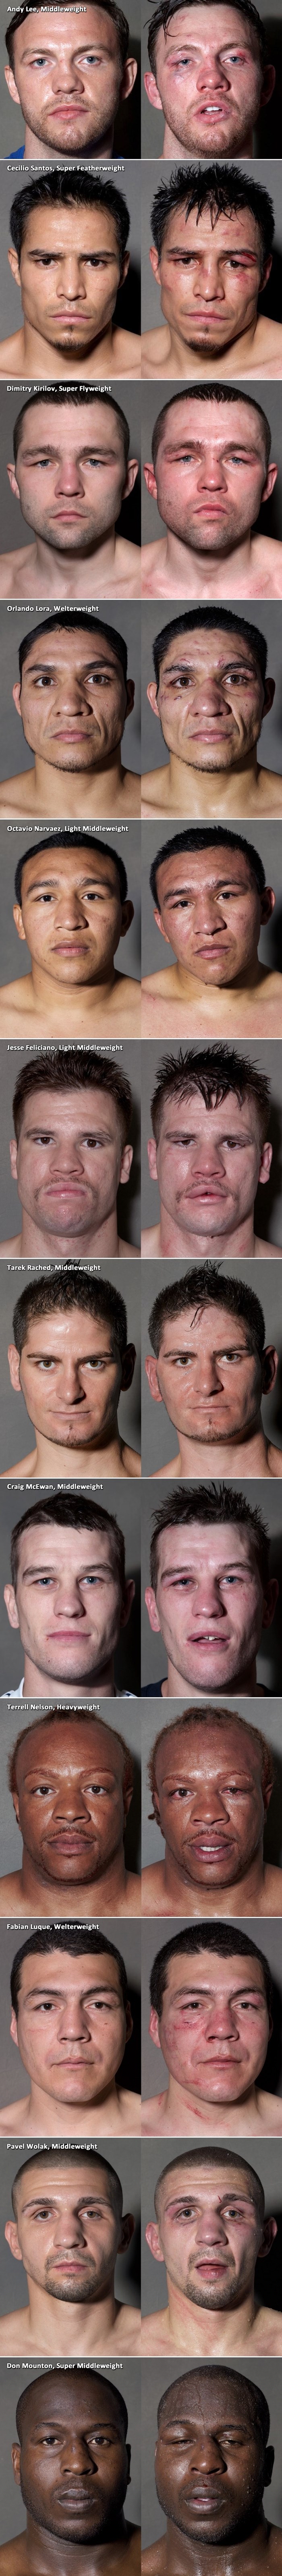 Lica dvanaest boksača prije i nakon borbe 